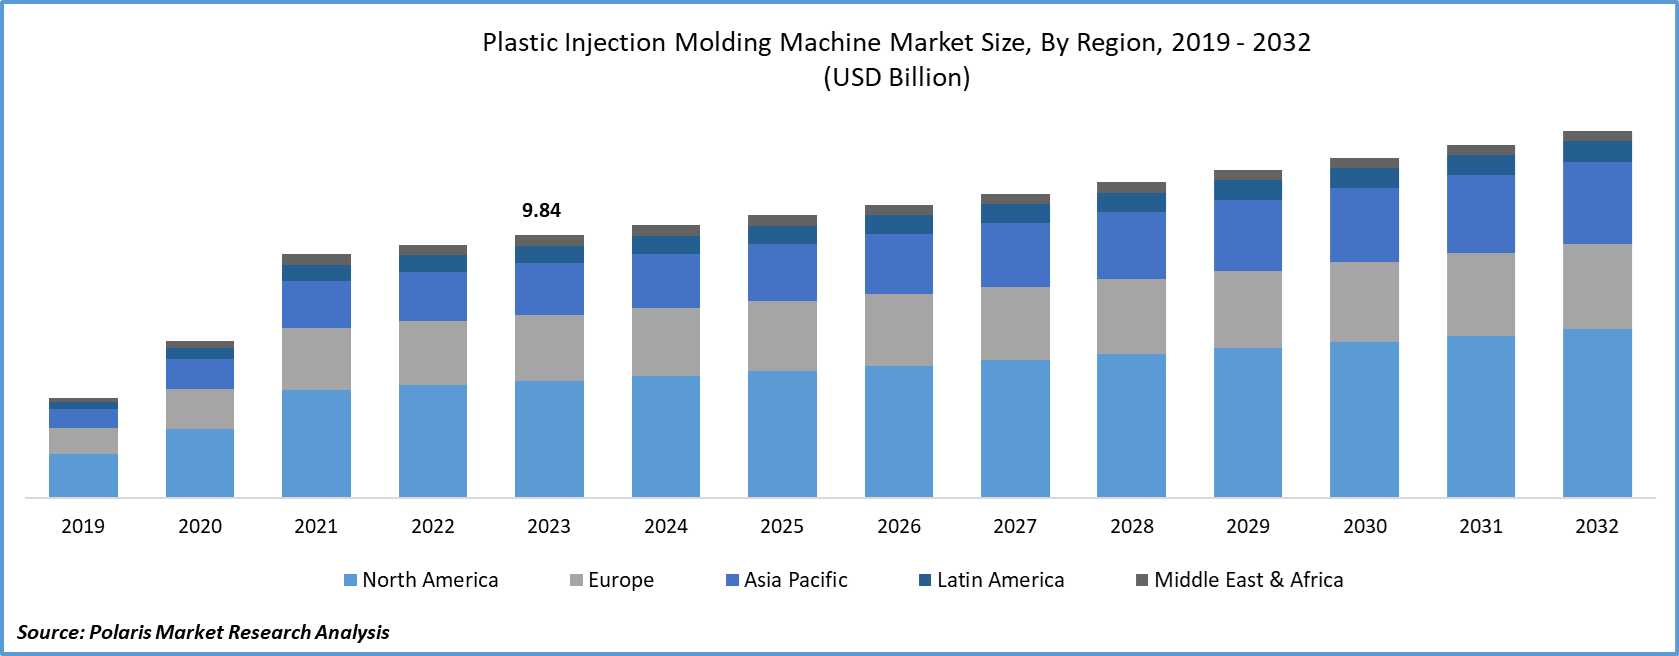 Plastic Injection Molding Machine Market Size